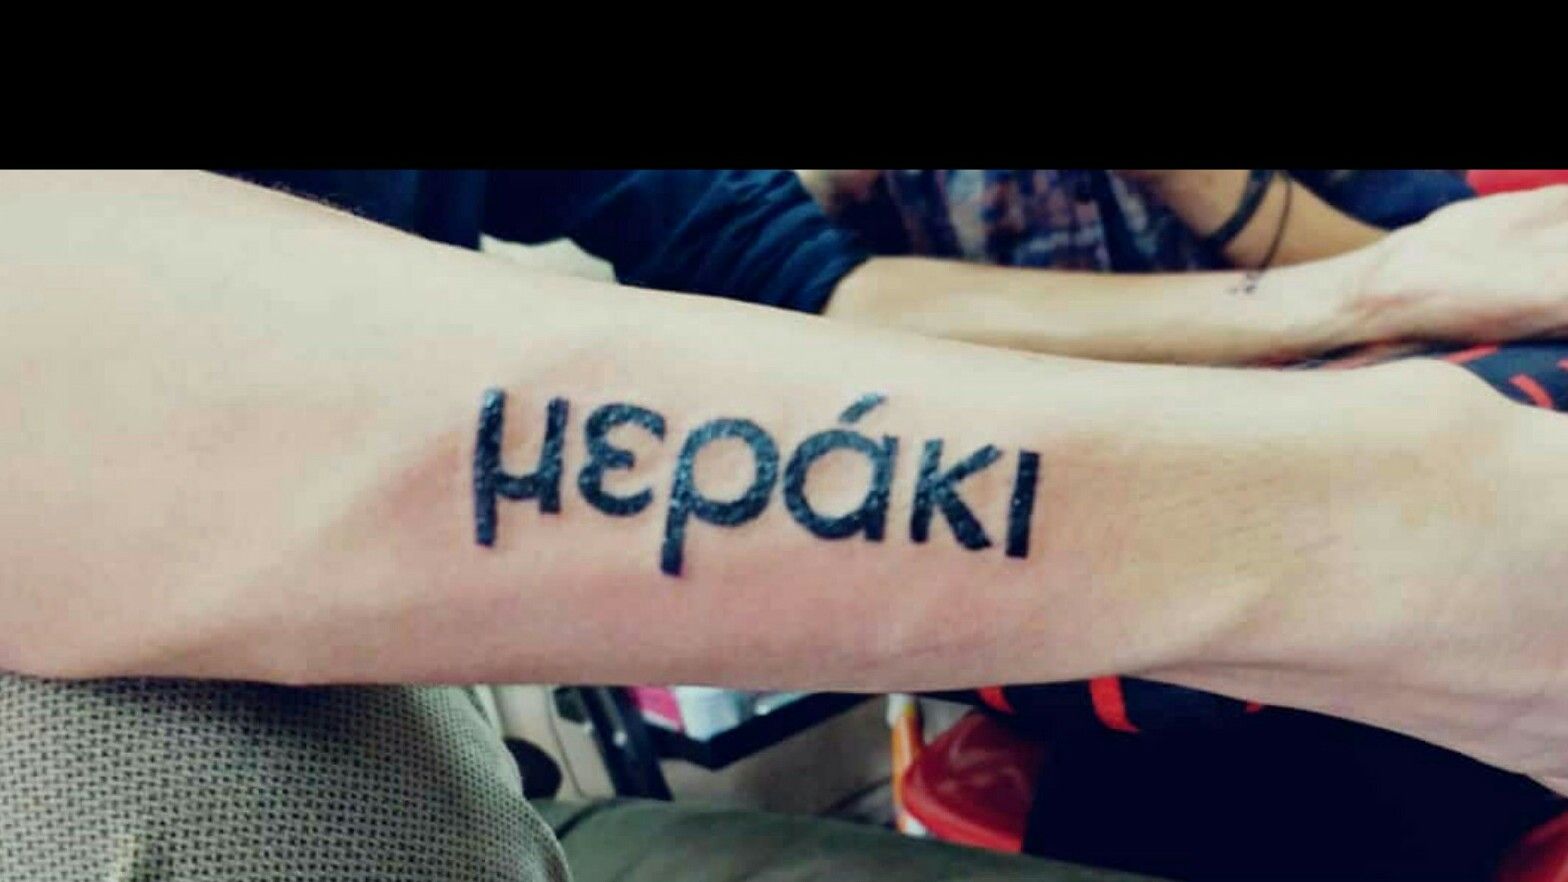 Greek Tattoo Font Generator For Free